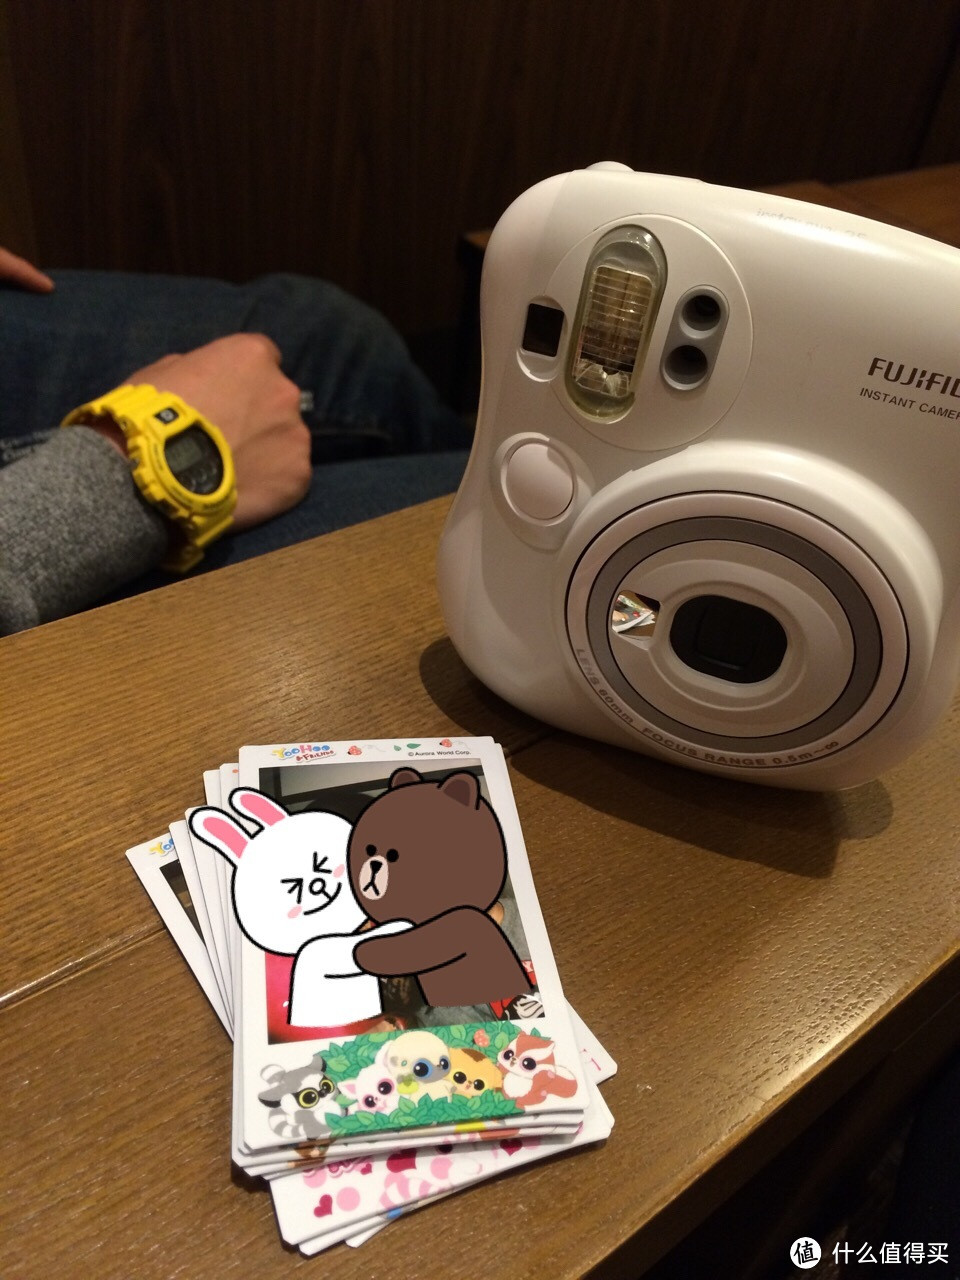 会拍照的小猫：日本官网入手 FUJIFILM 富士 Checky instax 趣奇 mini Hello Kitty 拍立得相机